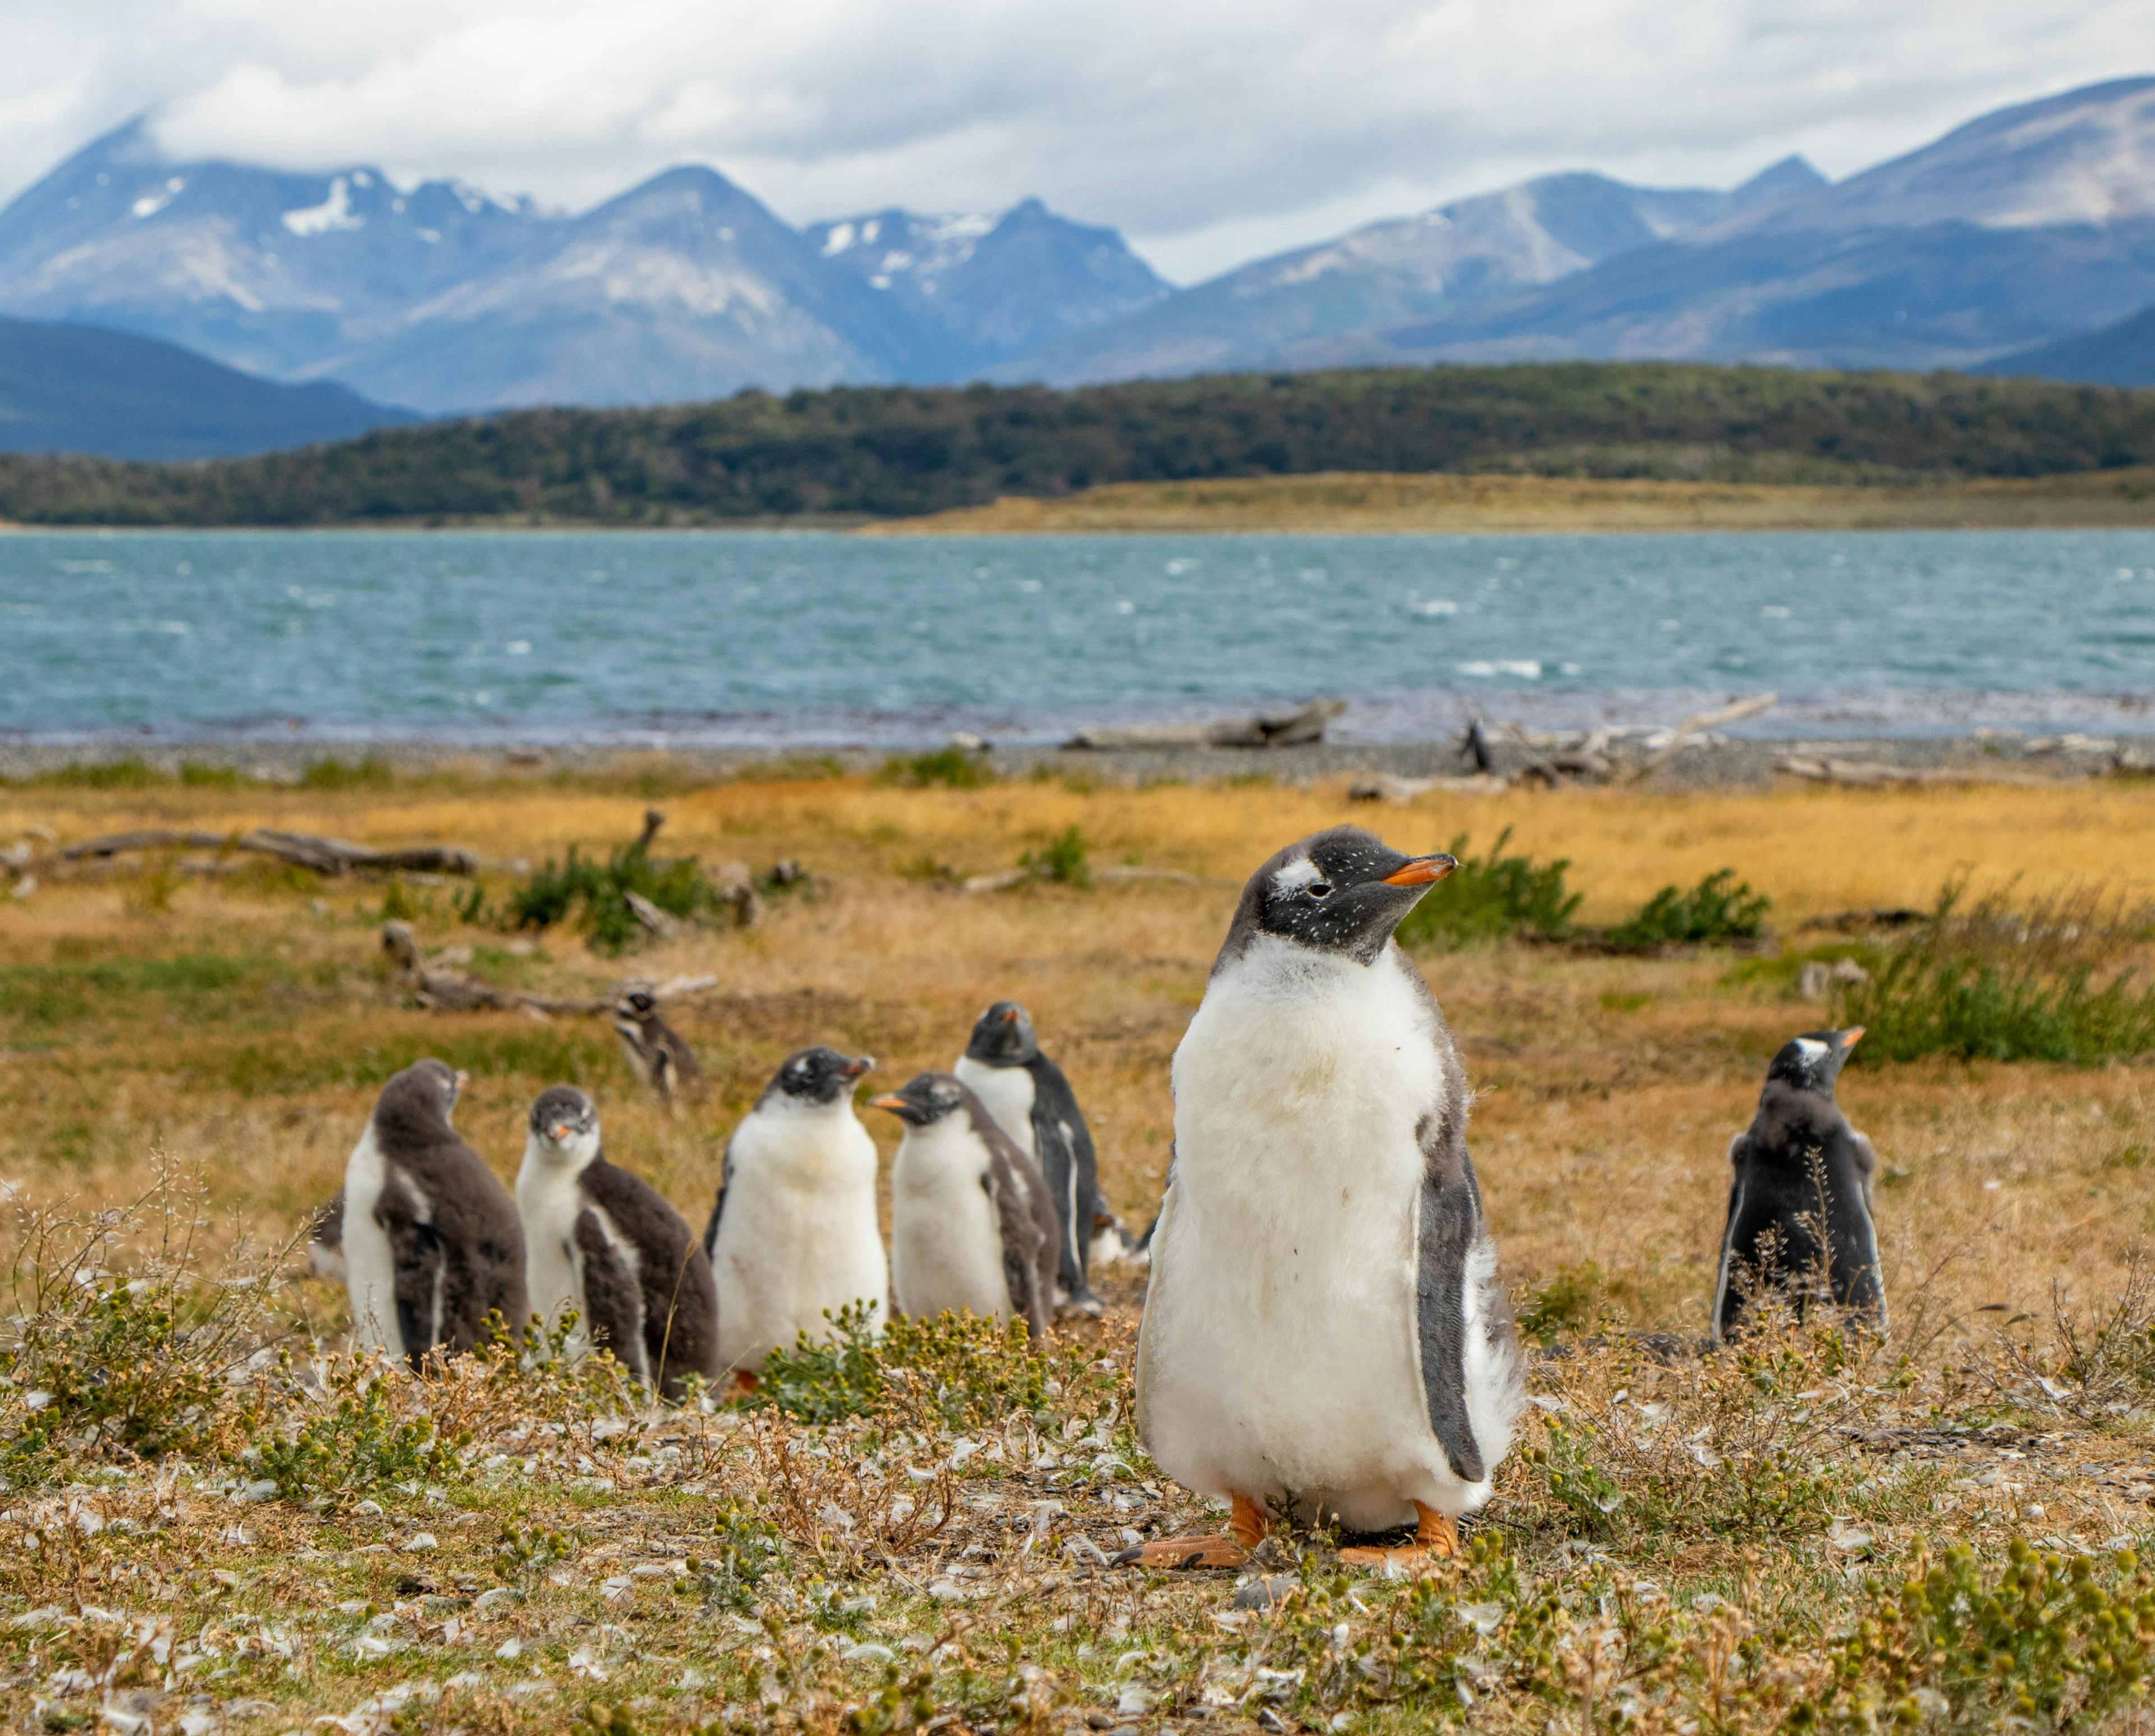 Penguins in Ushuaia, Tierra del Fuego, Argentina.